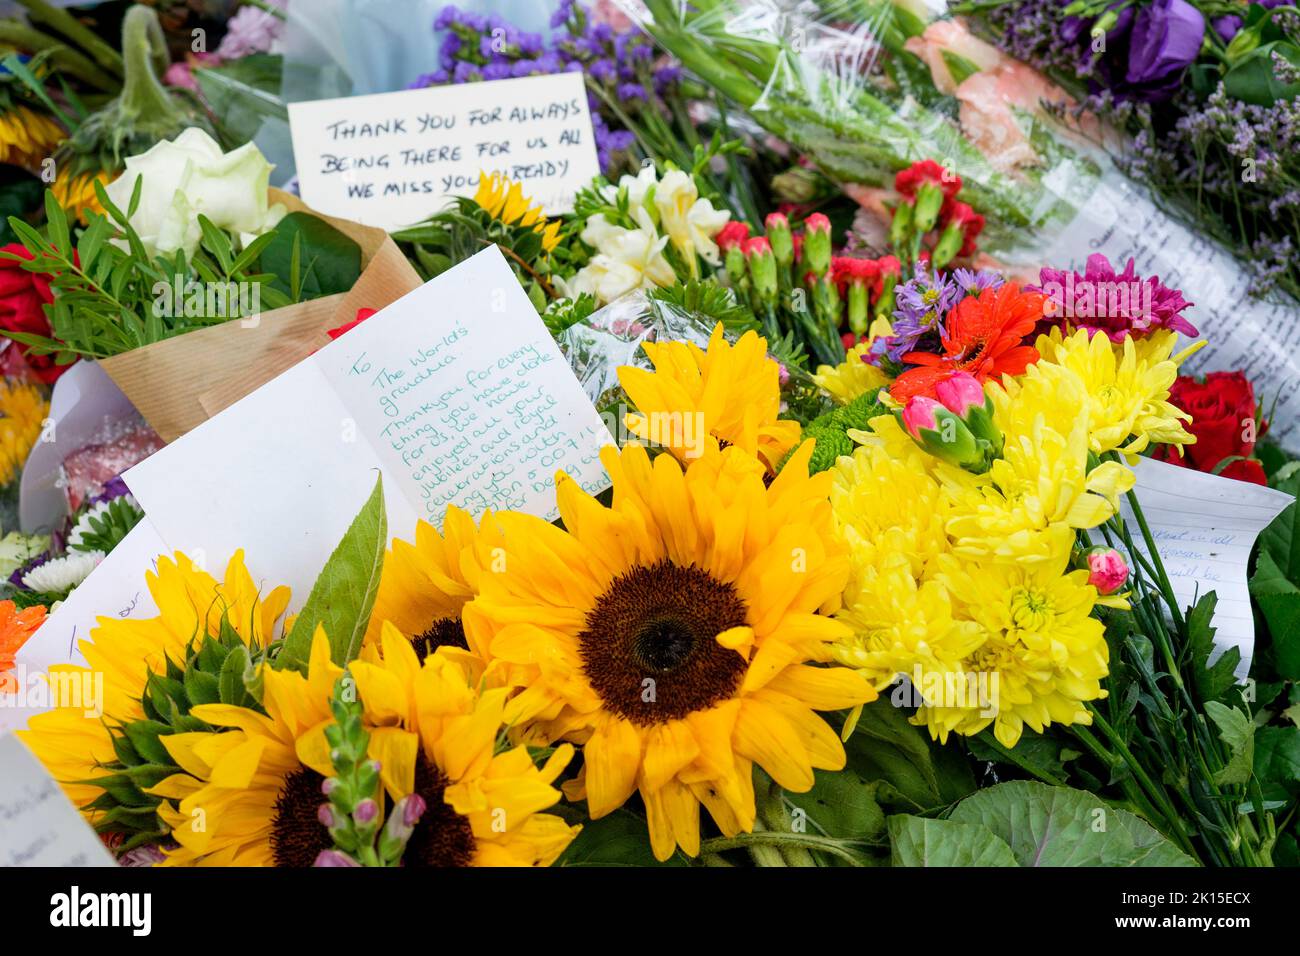 Ihre Majestät Königin Elizabeth II Beerdigung Blumen Tributes- Blumen Tribute und handgeschriebene Karten von der Öffentlichkeit links sind im Green Park, London abgebildet. Stockfoto